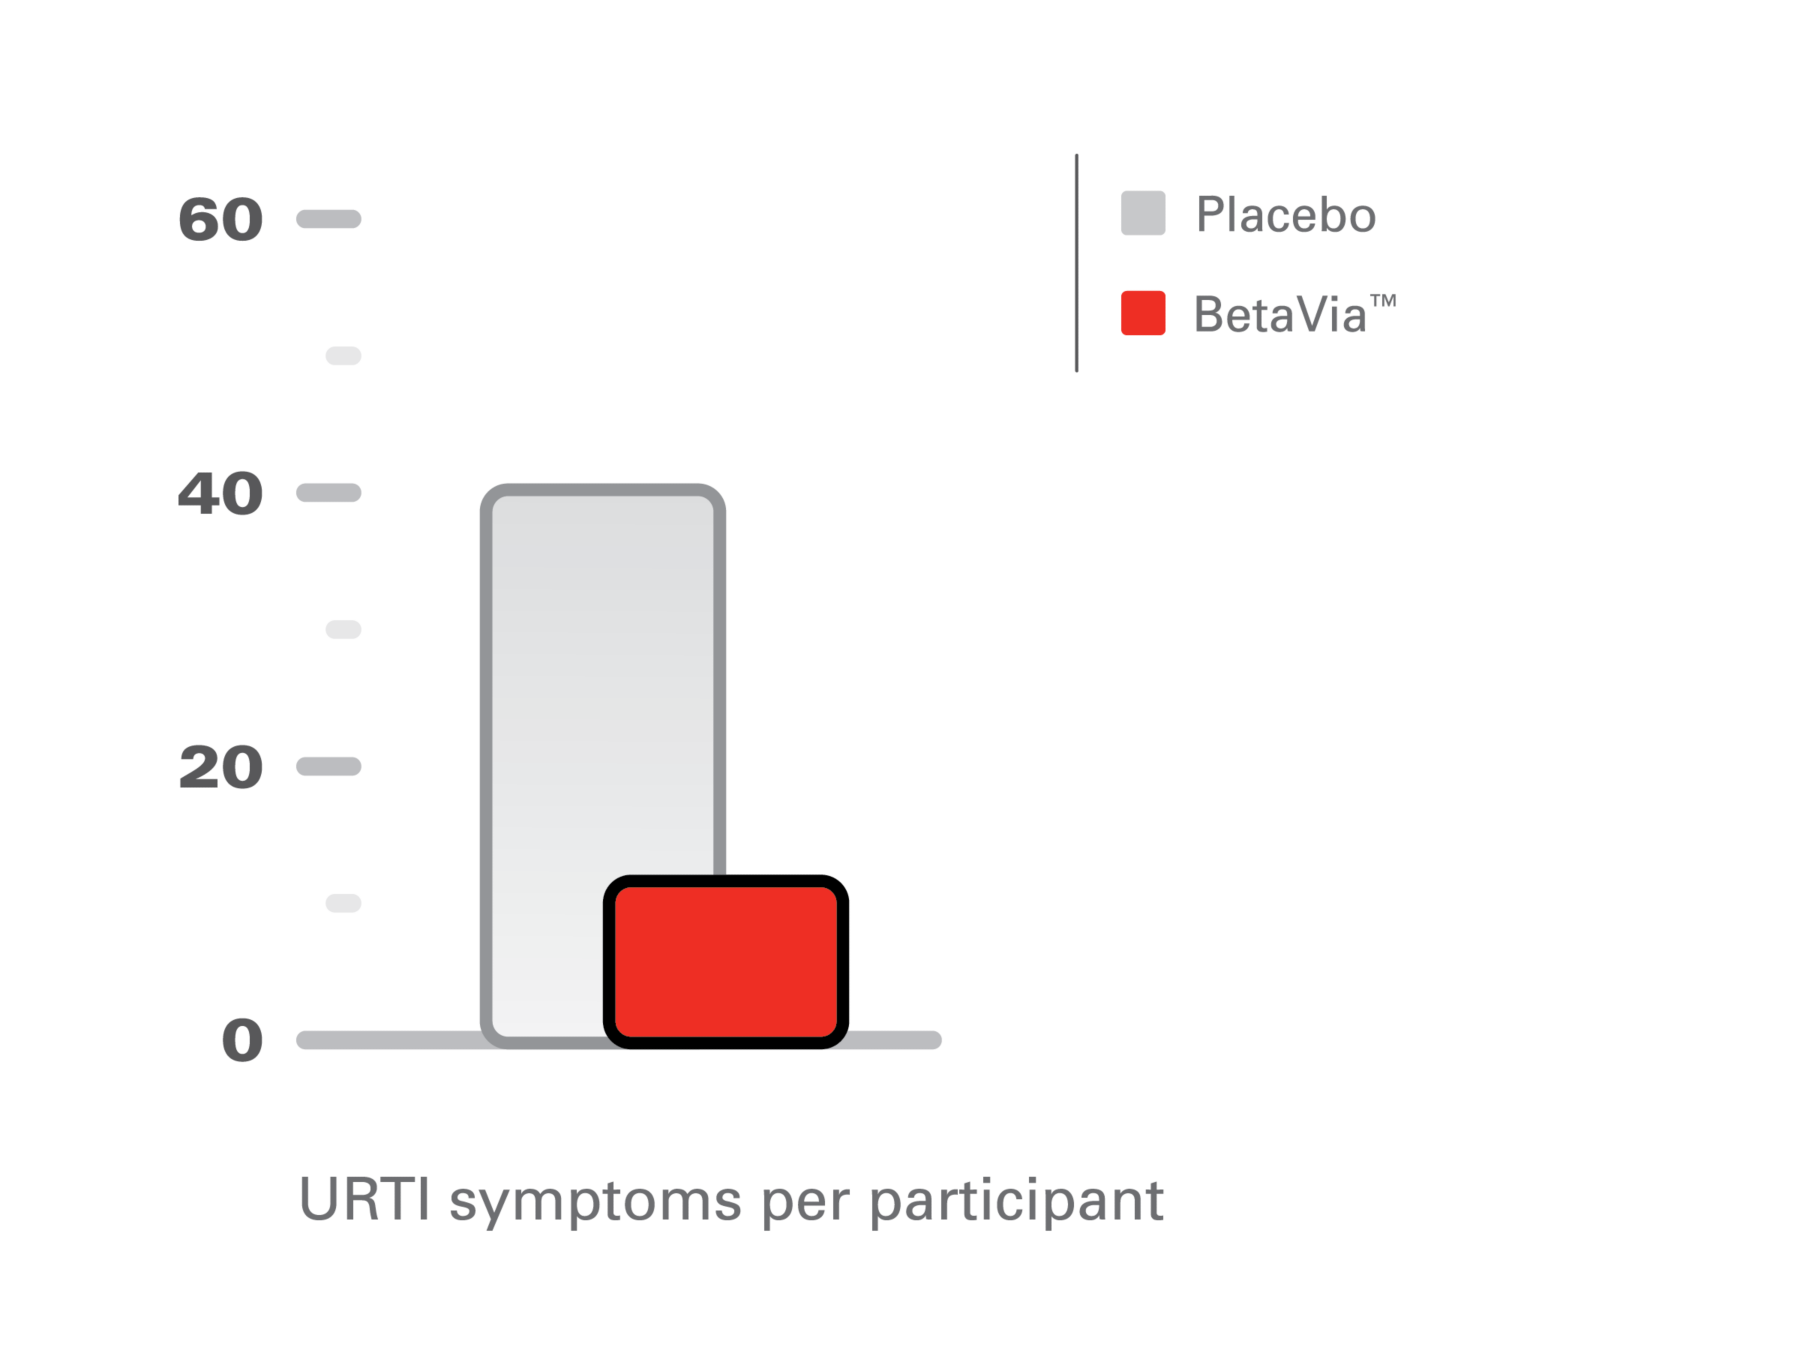 URTI symptoms per participant